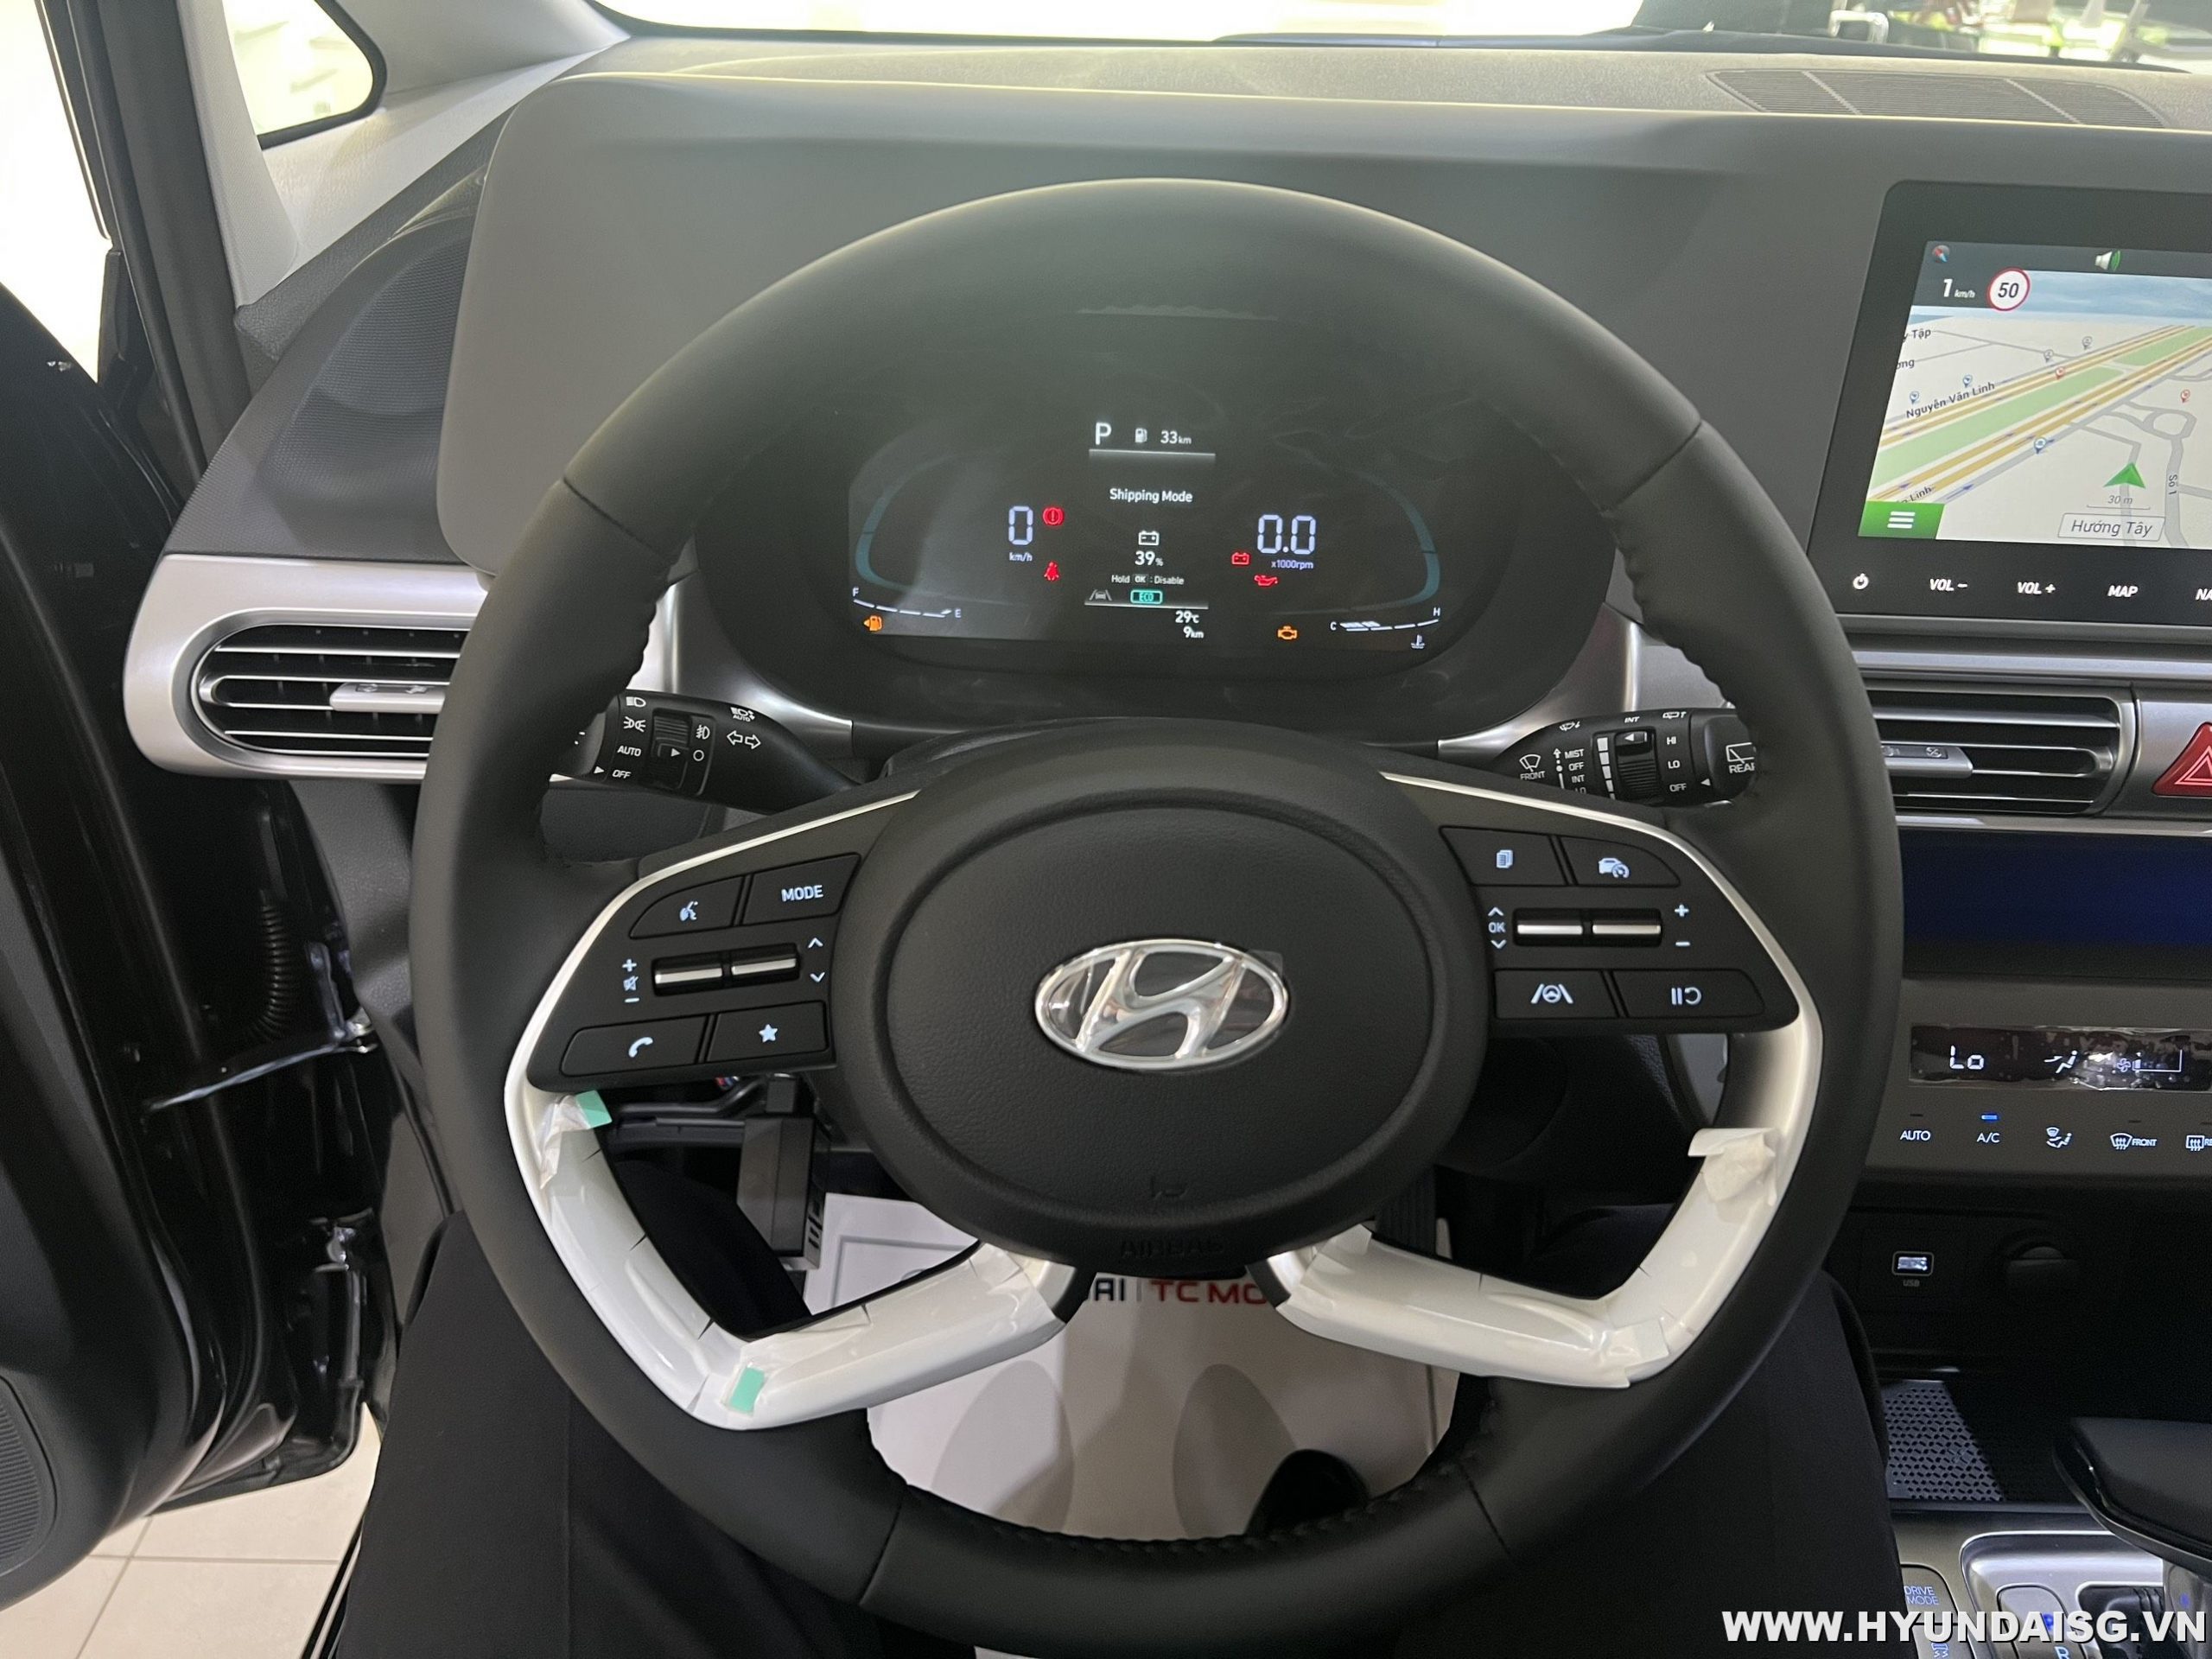 Hyundai Stargazer: Những hình ảnh về chiếc xe Hyundai Stargazer sẽ đưa bạn đến một cuộc phiêu lưu mới, mang đến những cảm xúc và trải nghiệm khó quên. Tự tin trên mọi cung đường, Stargazer sẽ cùng bạn đến những điểm đến mới lạ, đầy sự thú vị và không thể ngừng khám phá.